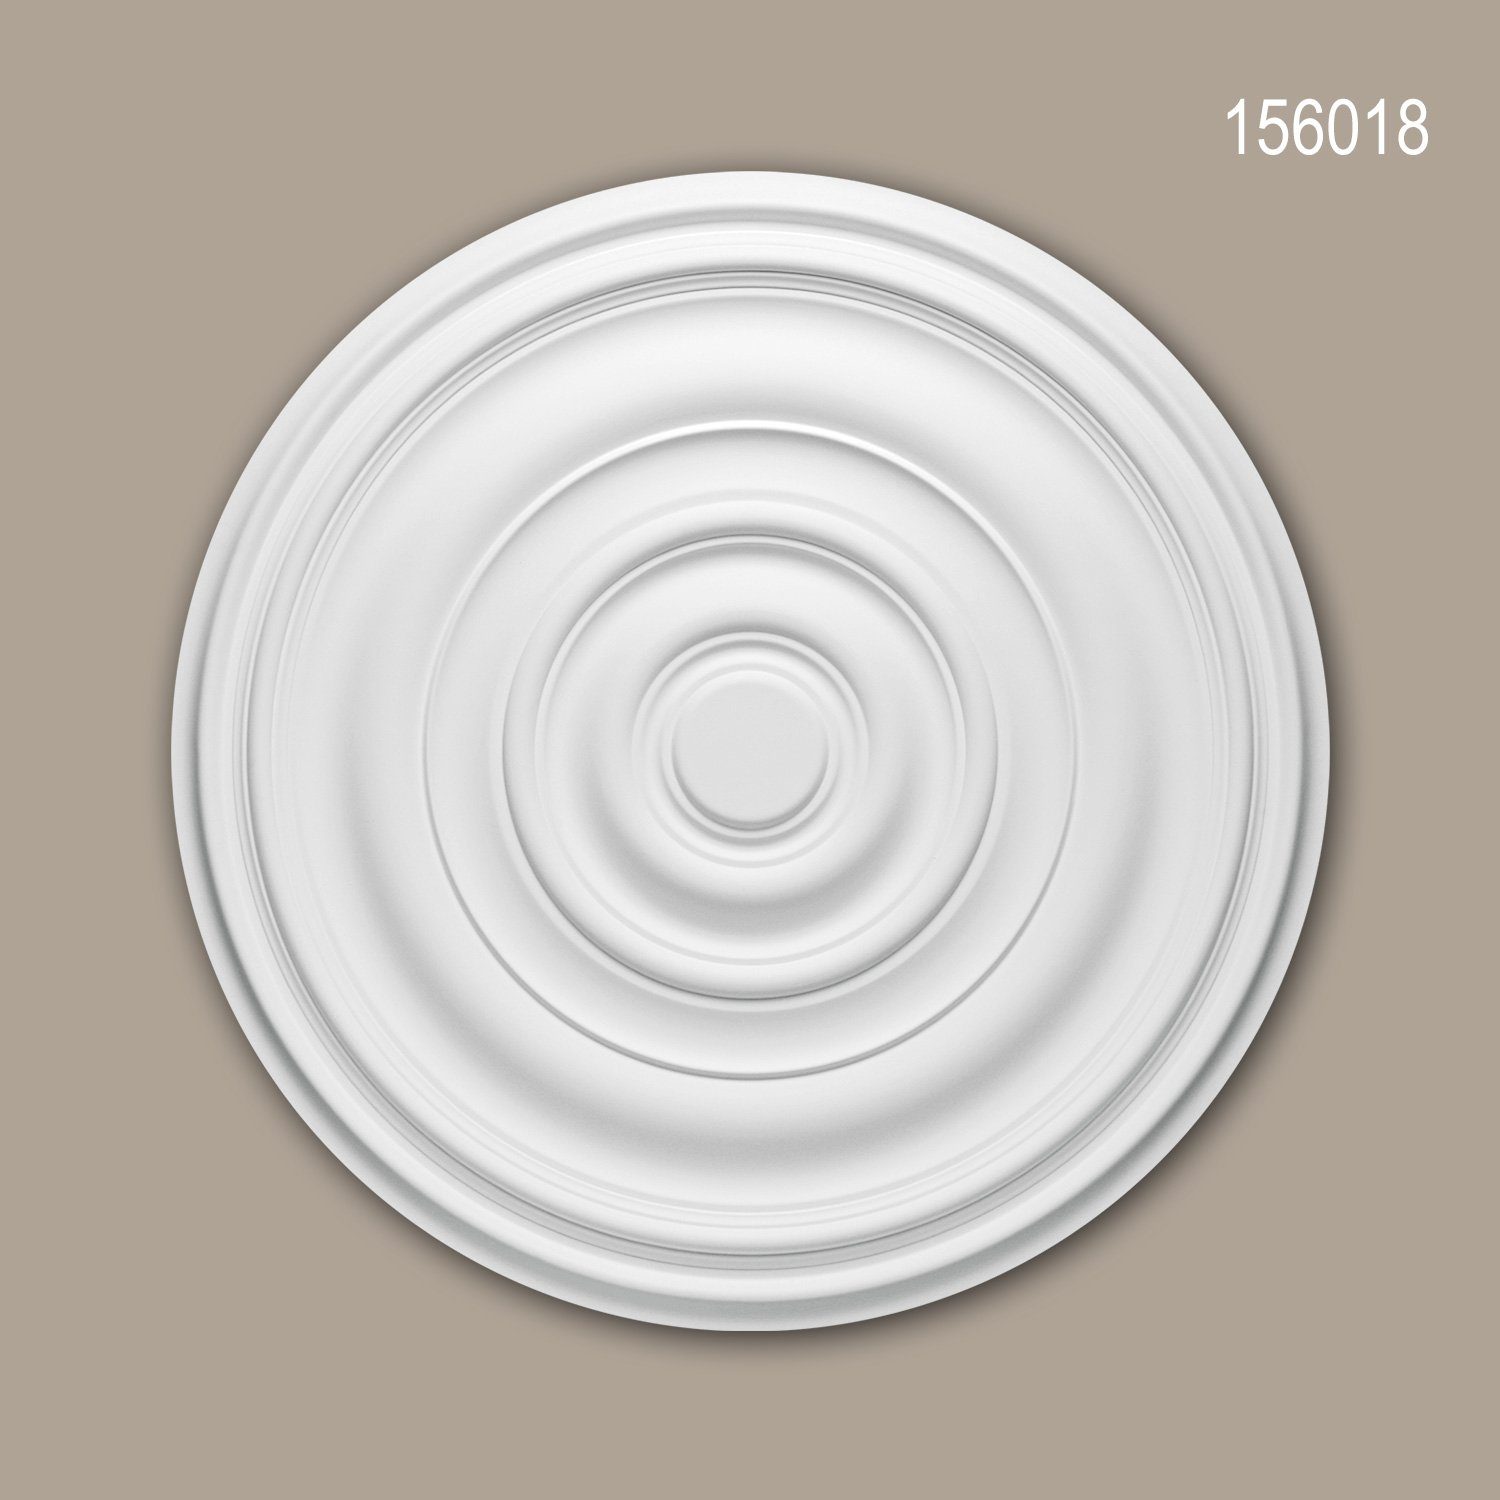 Profhome Decken-Rosette 156018 (Rosette, 1 St., Deckenrosette, Medallion, Stuckrosette, Deckenelement, Zierelement, Durchmesser 74,5 cm), weiß, vorgrundiert, Stil: Zeitlos / Klassisch | Wandobjekte